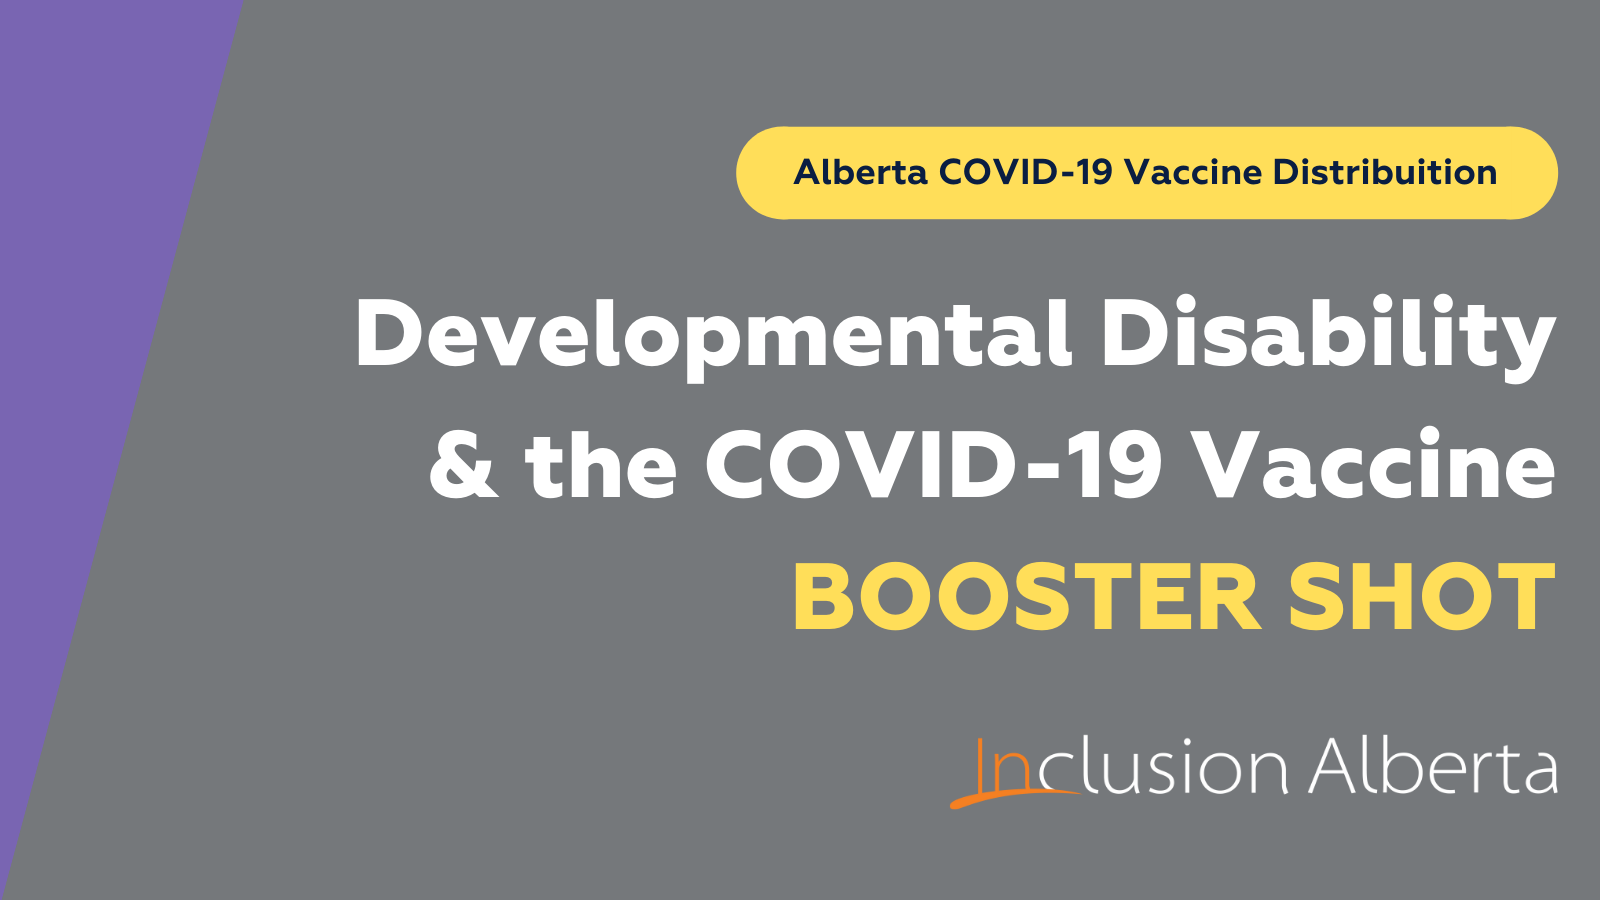 Alberta COVID-19 Vaccine Distribution. Developmental Disability & the COVID-19 Vaccine Booster Shot. Inclusion Alberta